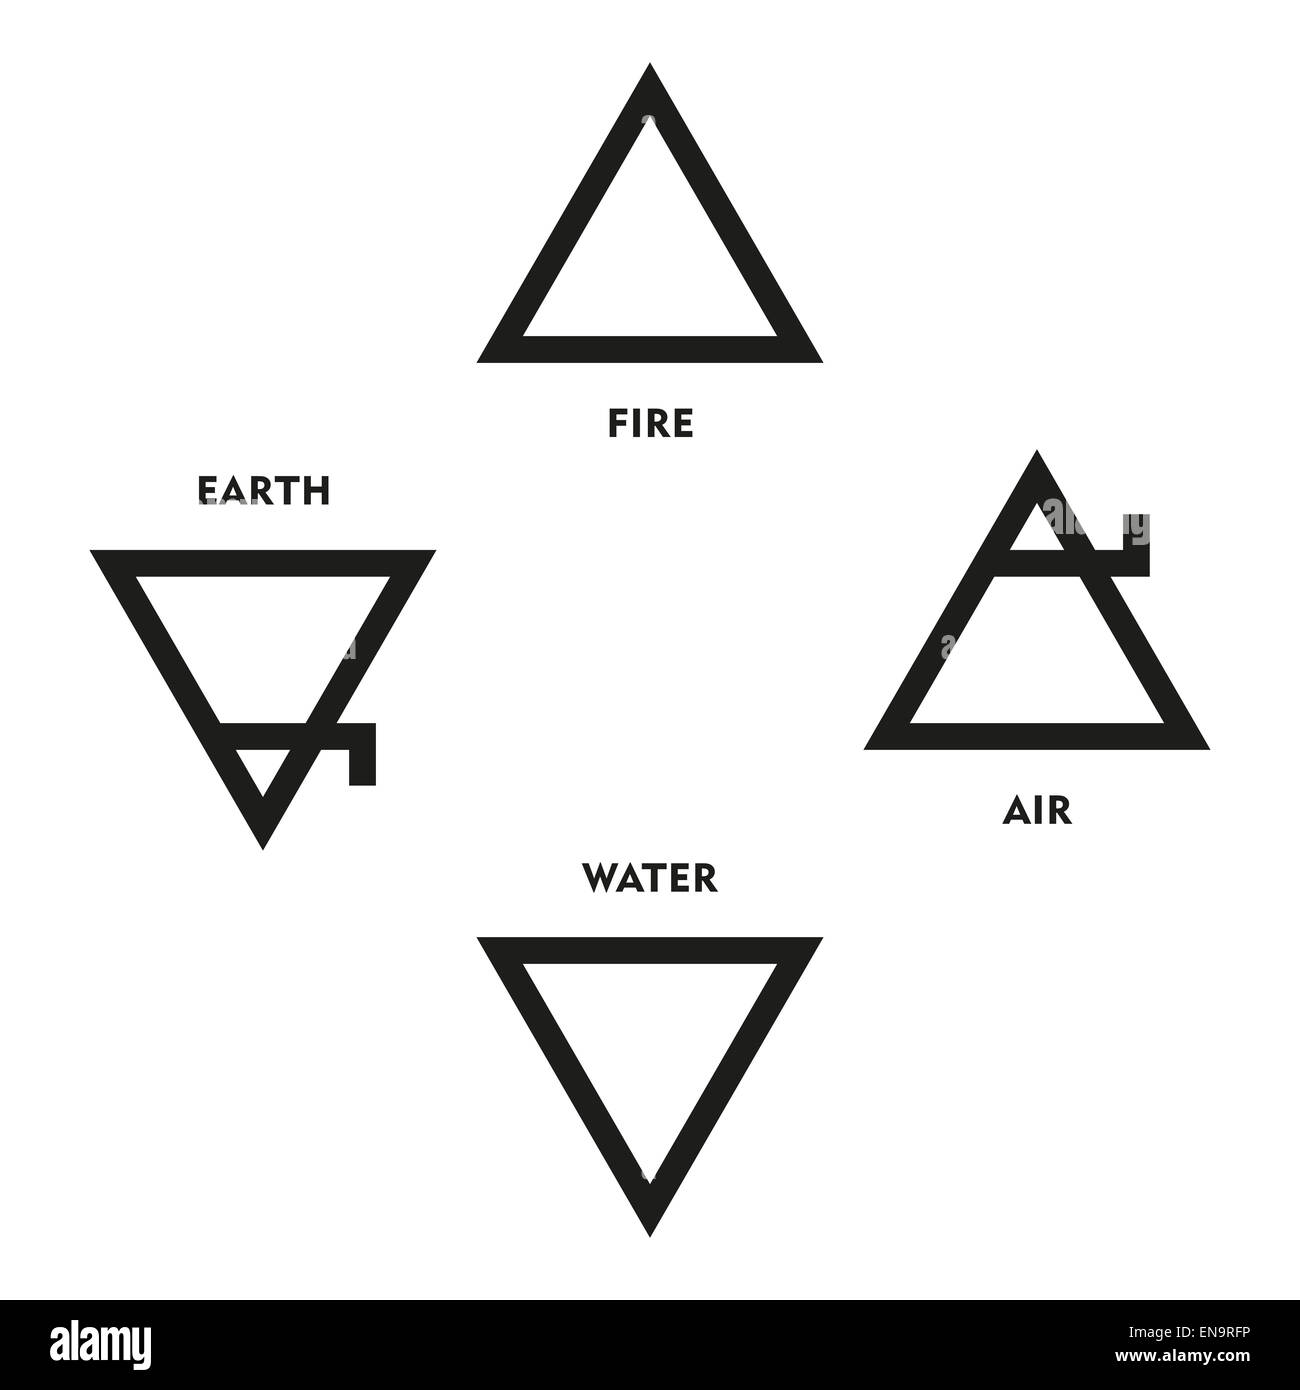 Cuatro elementos clásicos Símbolos de alquimia medieval. Los triángulos que representa el fuego, la tierra, el agua y el aire. Ilustración. Foto de stock